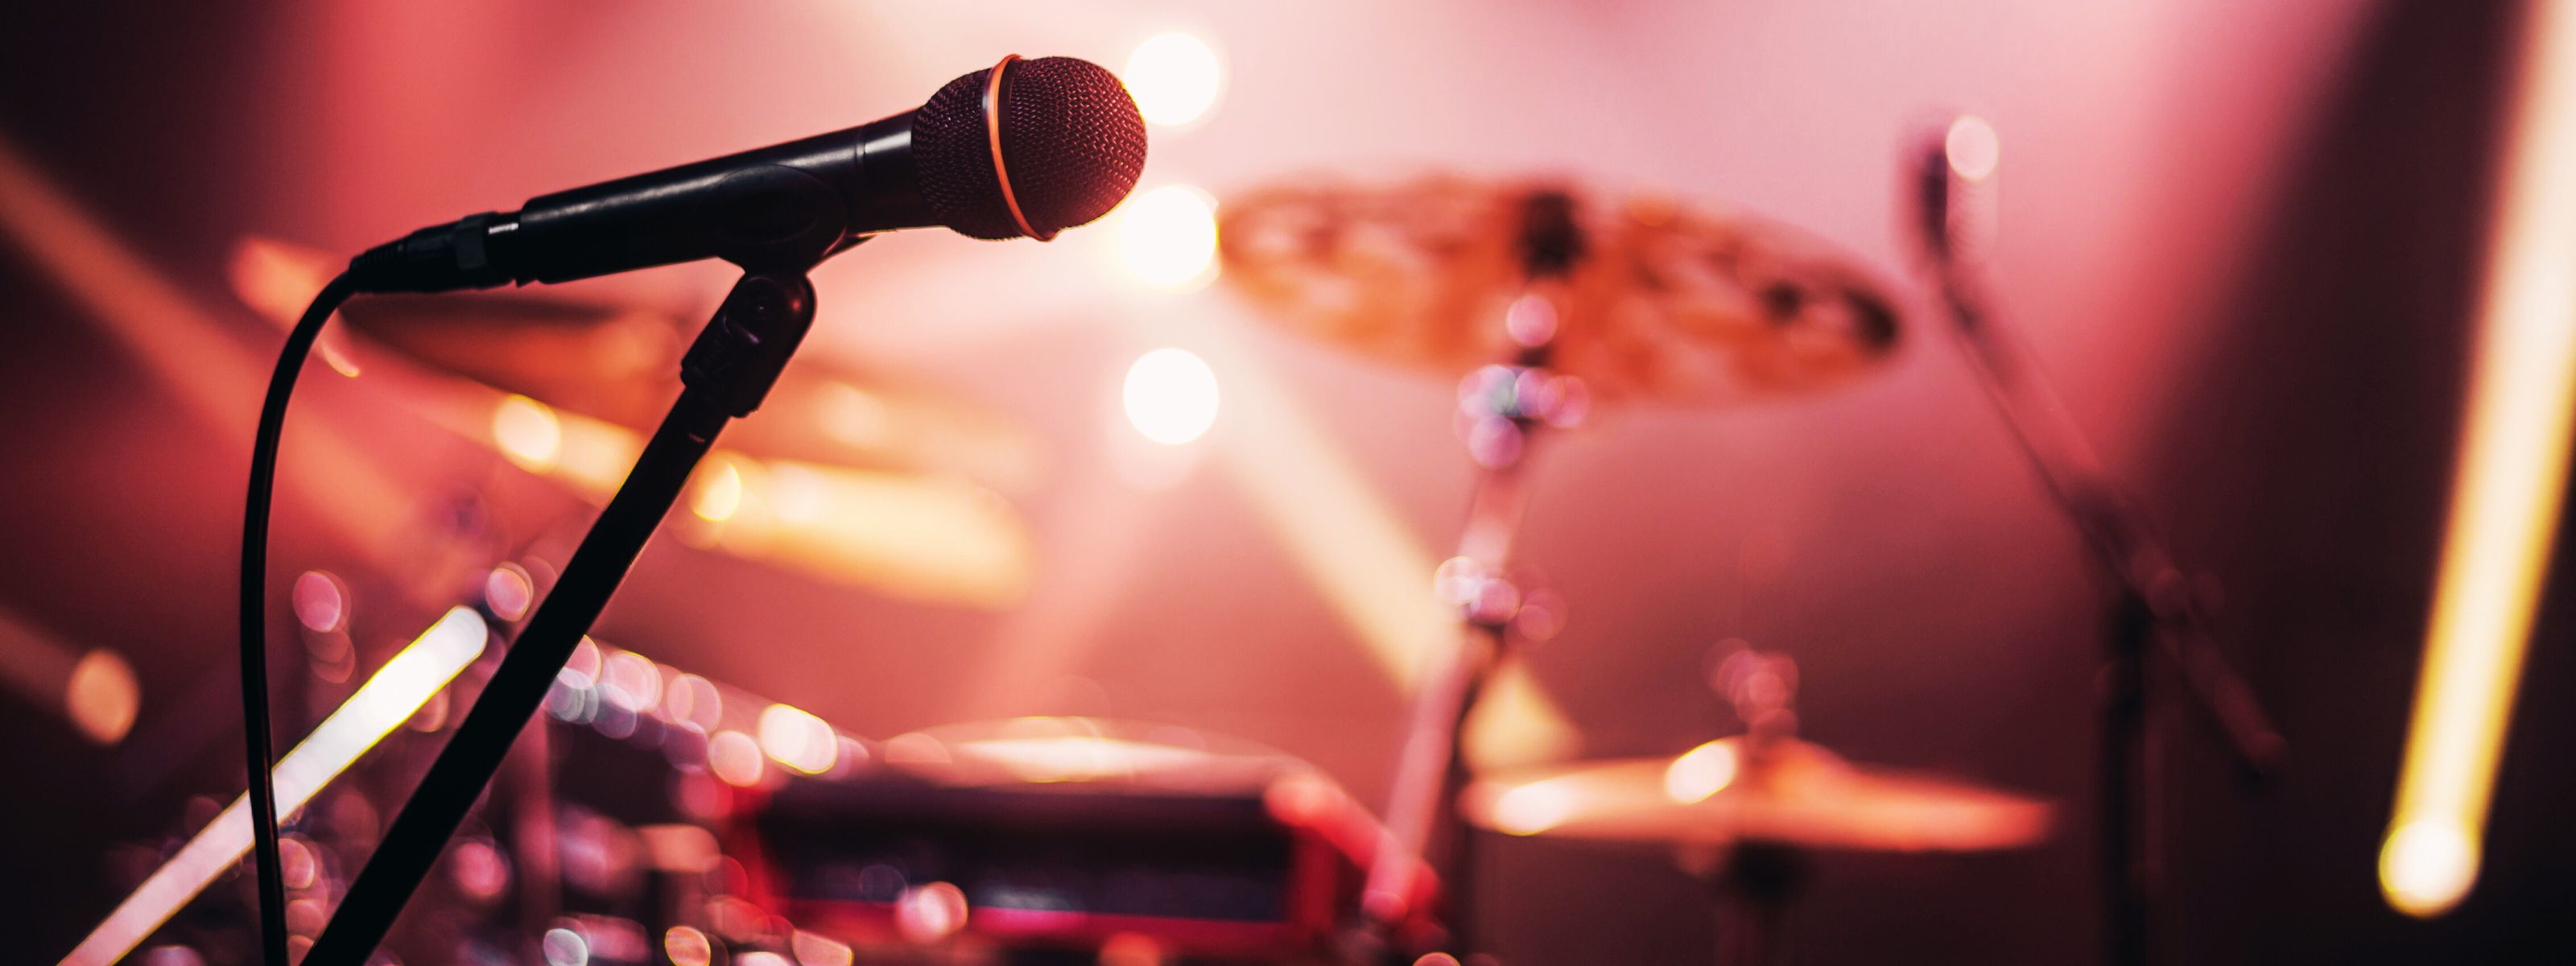 Das Bild zeigt ein Mikrofon auf einer Bühne, im Hintergrund ein Schlagzeug